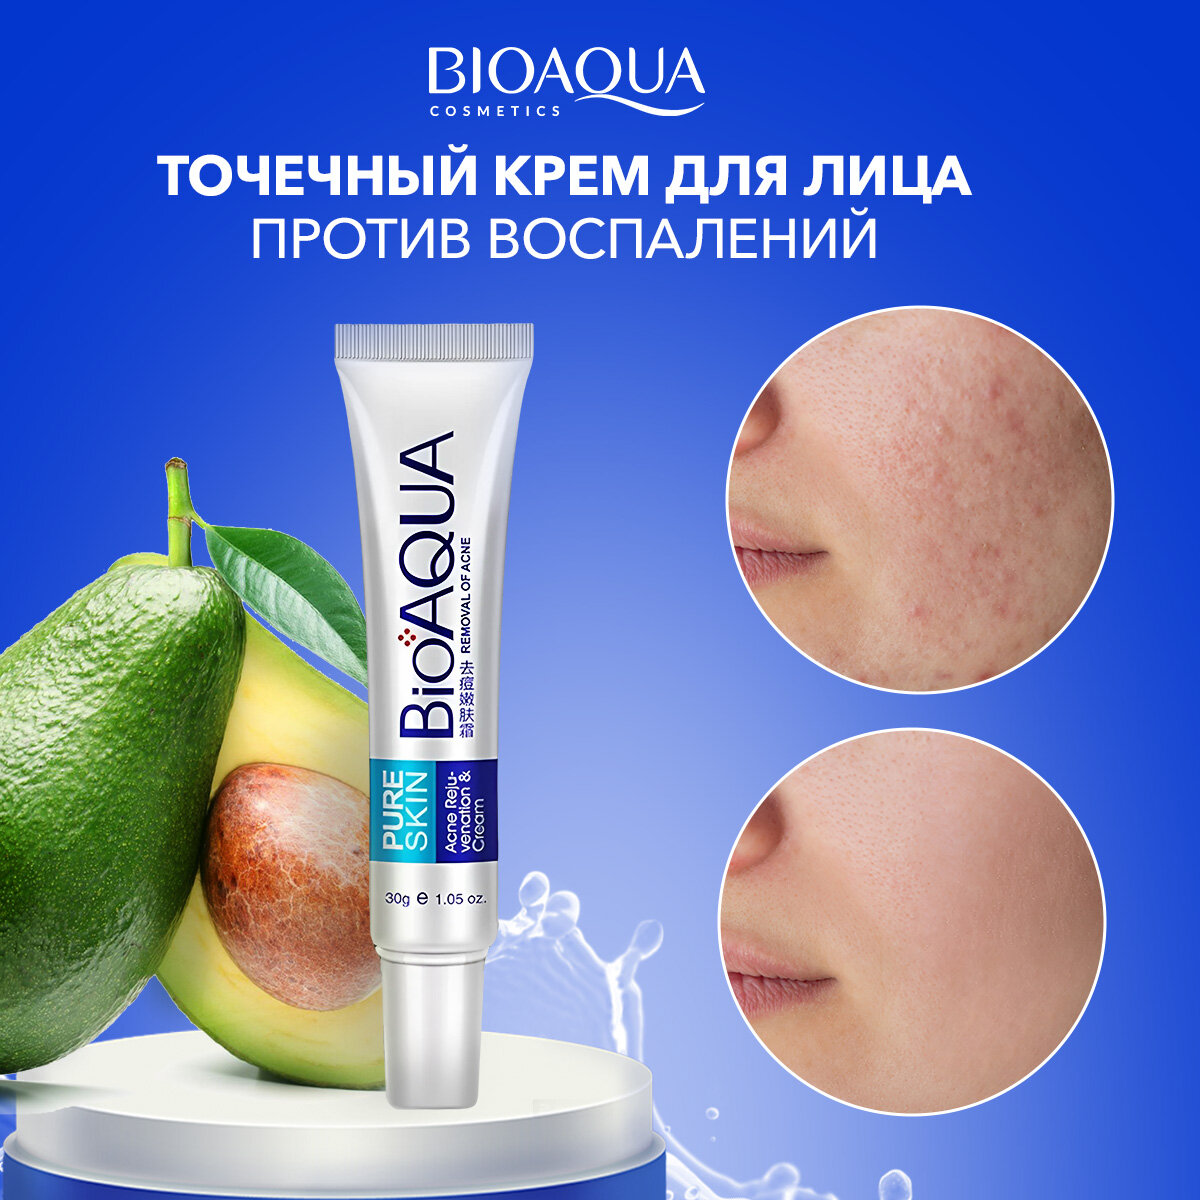 BioAqua Концентрированный крем от прыщей и акне для точечного применения Pure Skin, 30 мл